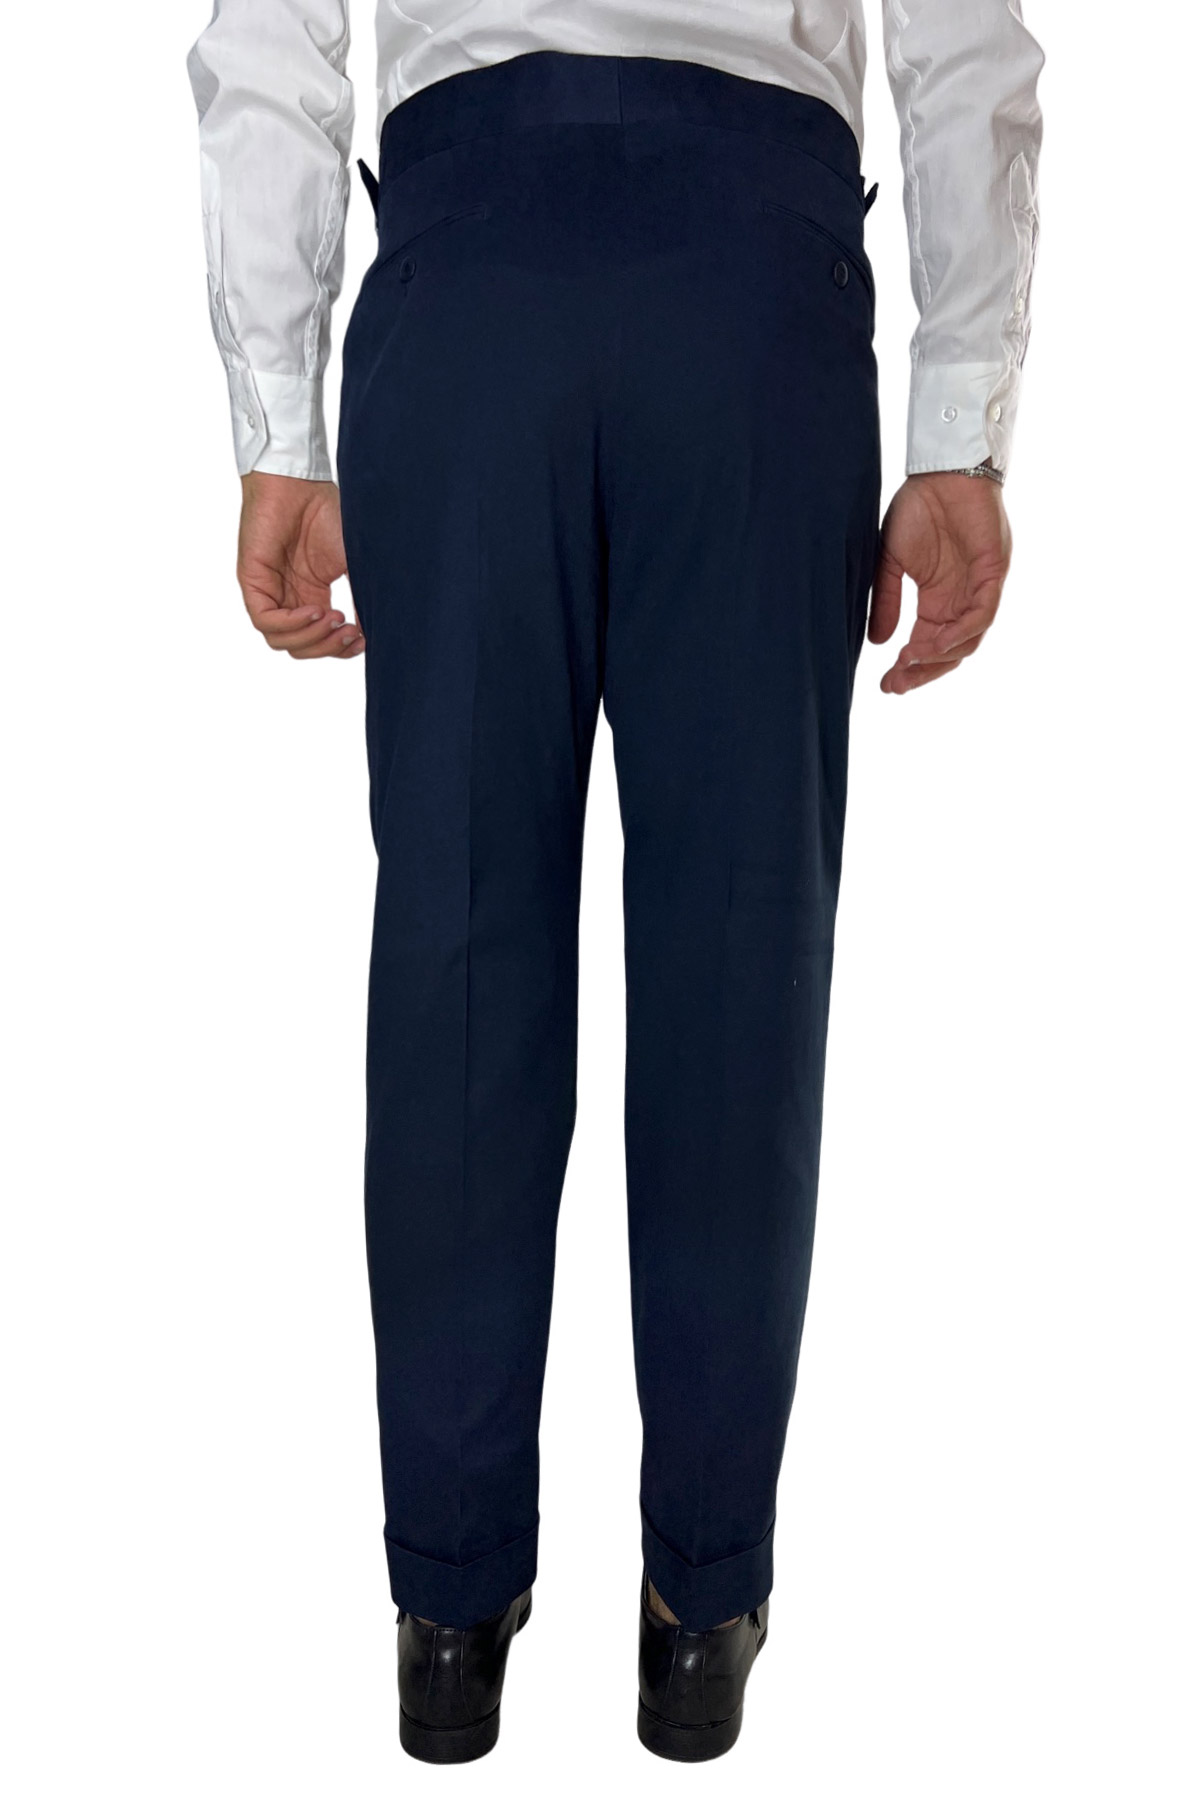 Pantalone uomo navy blu vita alta tasca america in cotone con doppia pinces e fibbie laterali